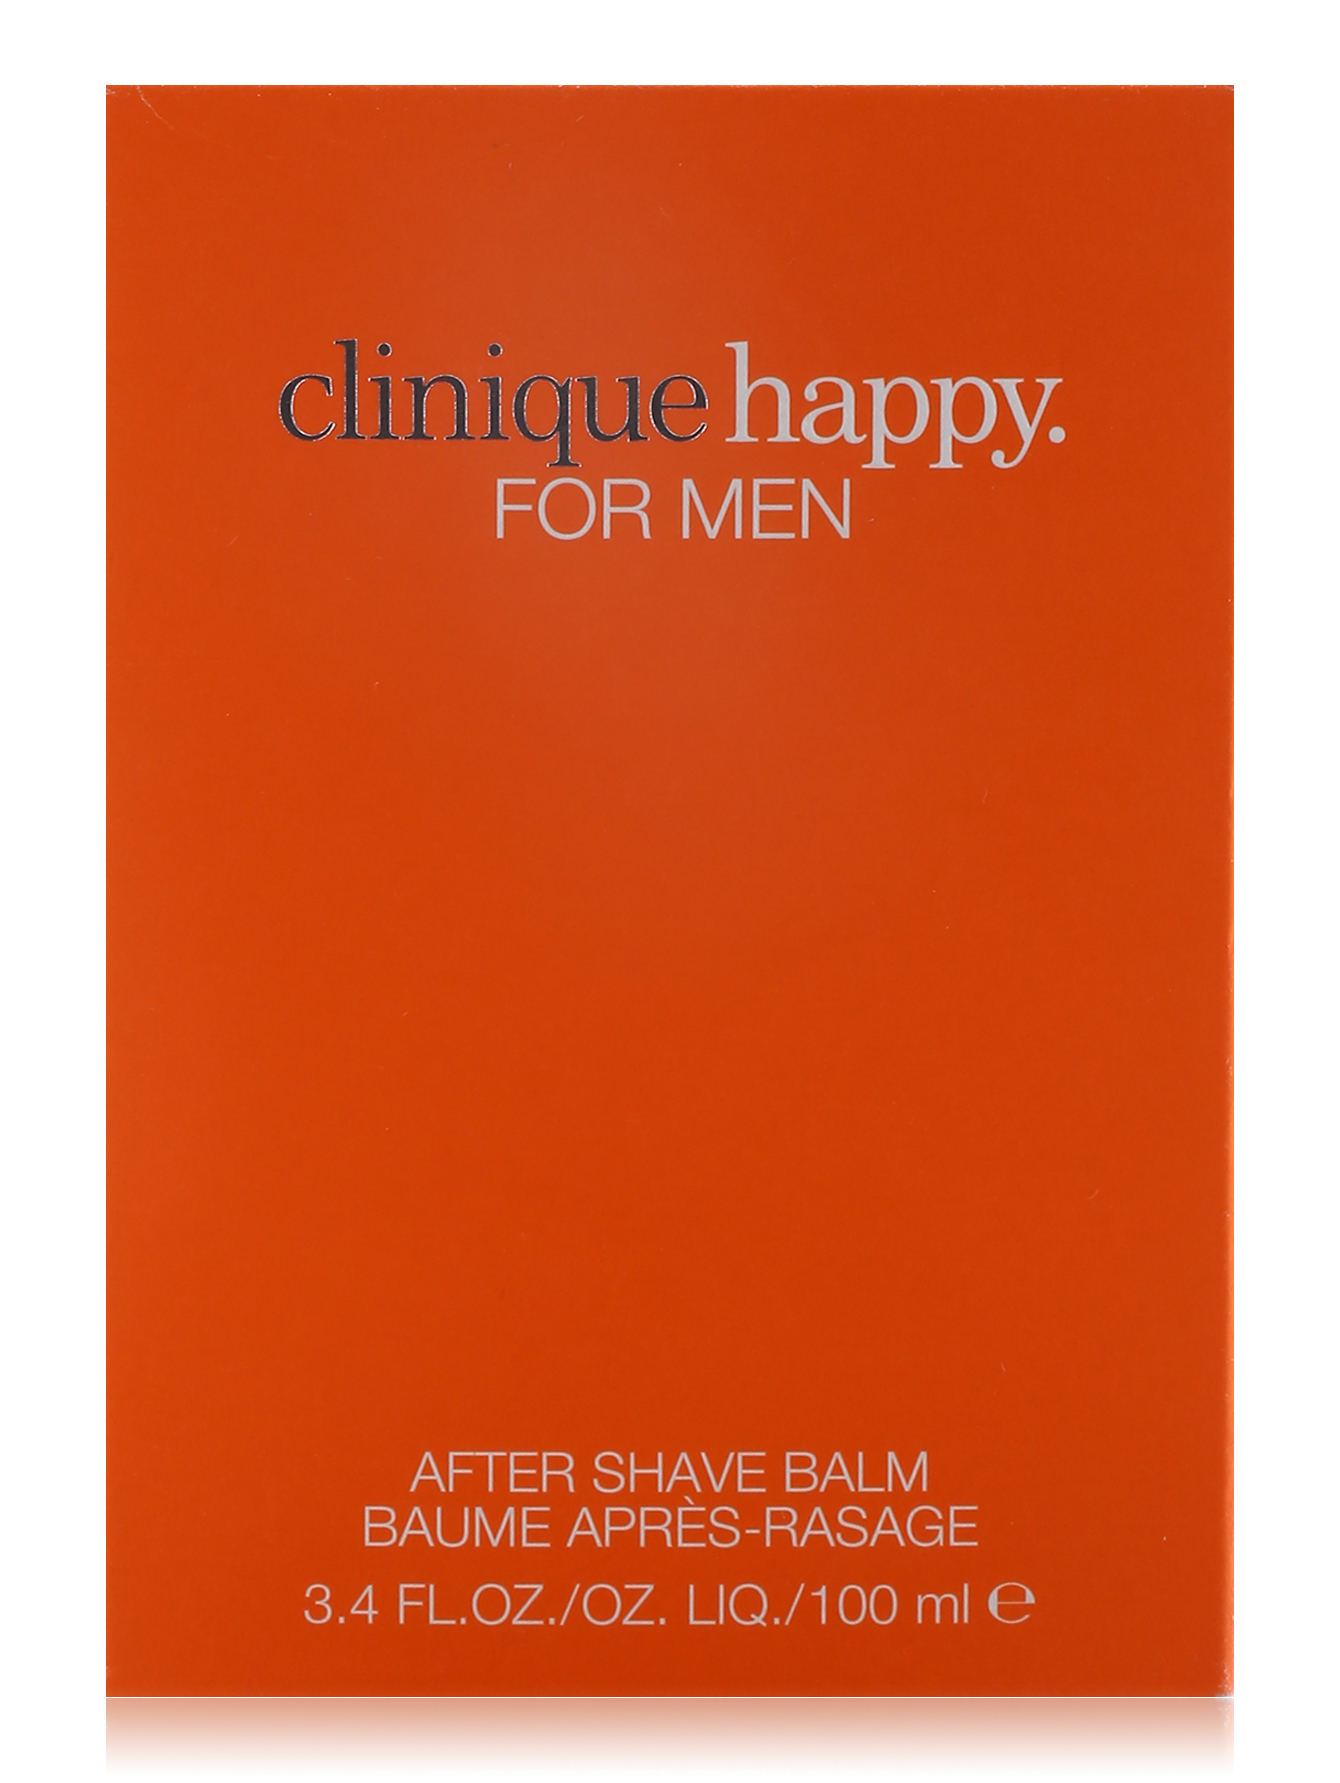  Бальзам после бритья - Clinique Happy, 100ml - Обтравка1